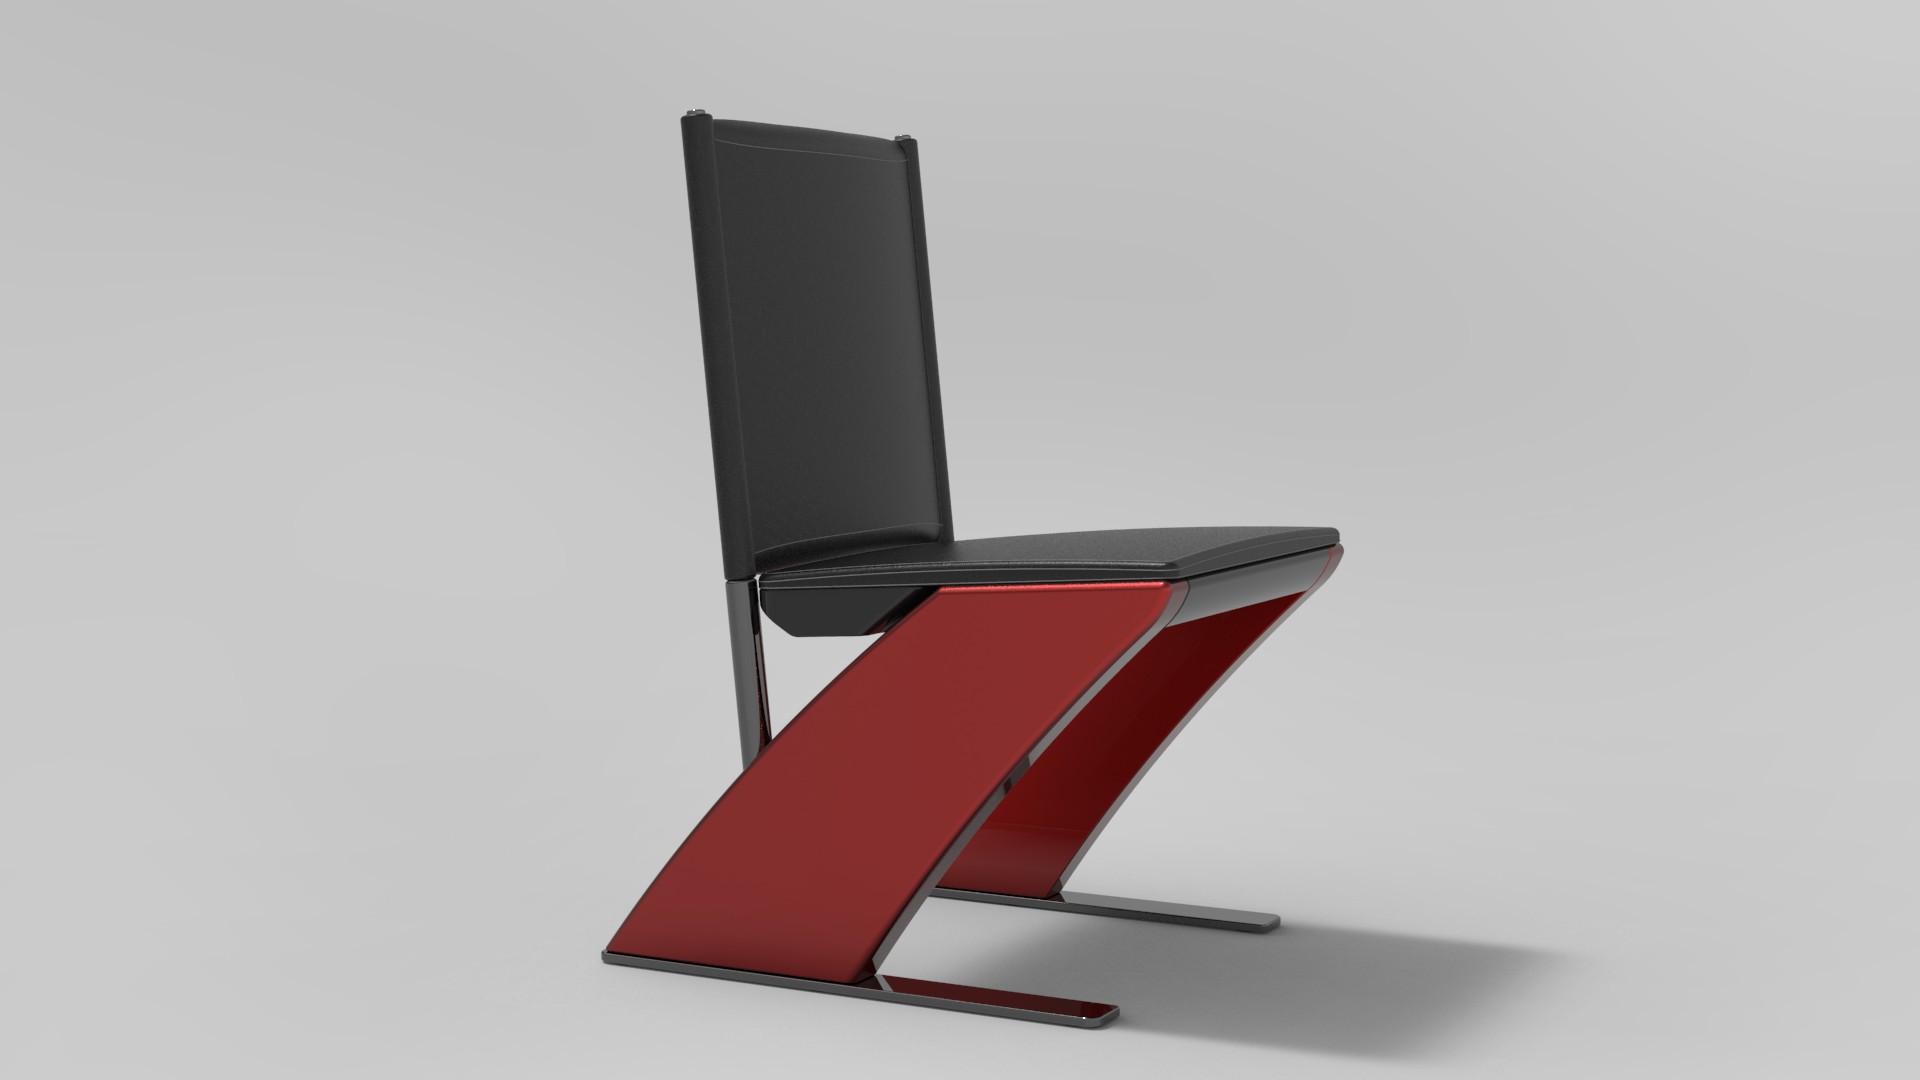 Delta chair